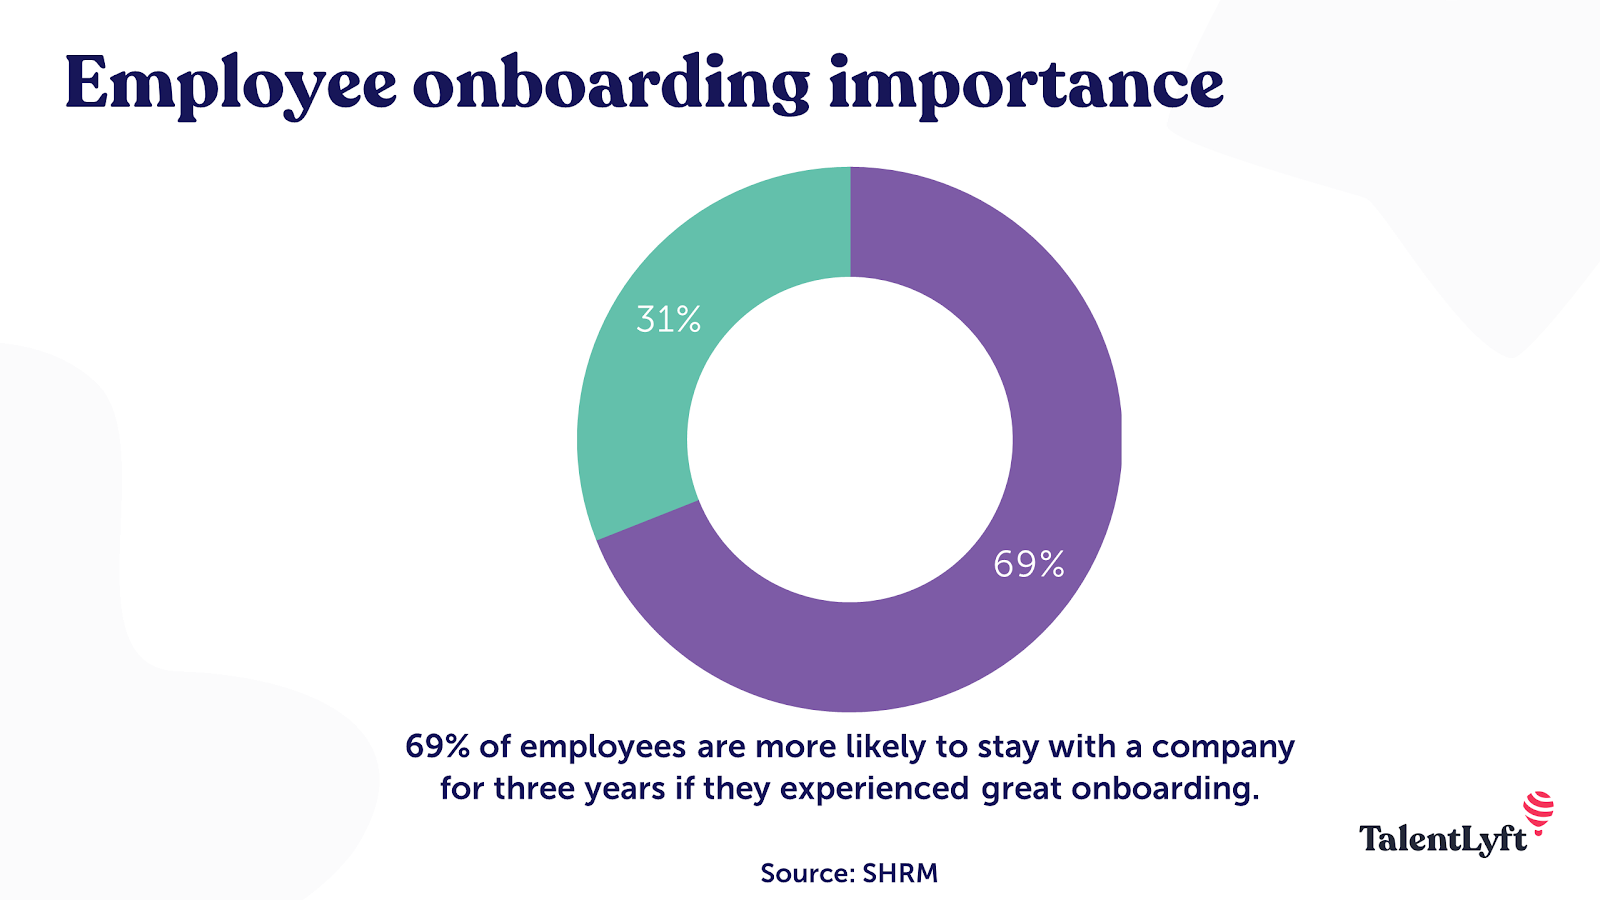 Employee onboarding importance